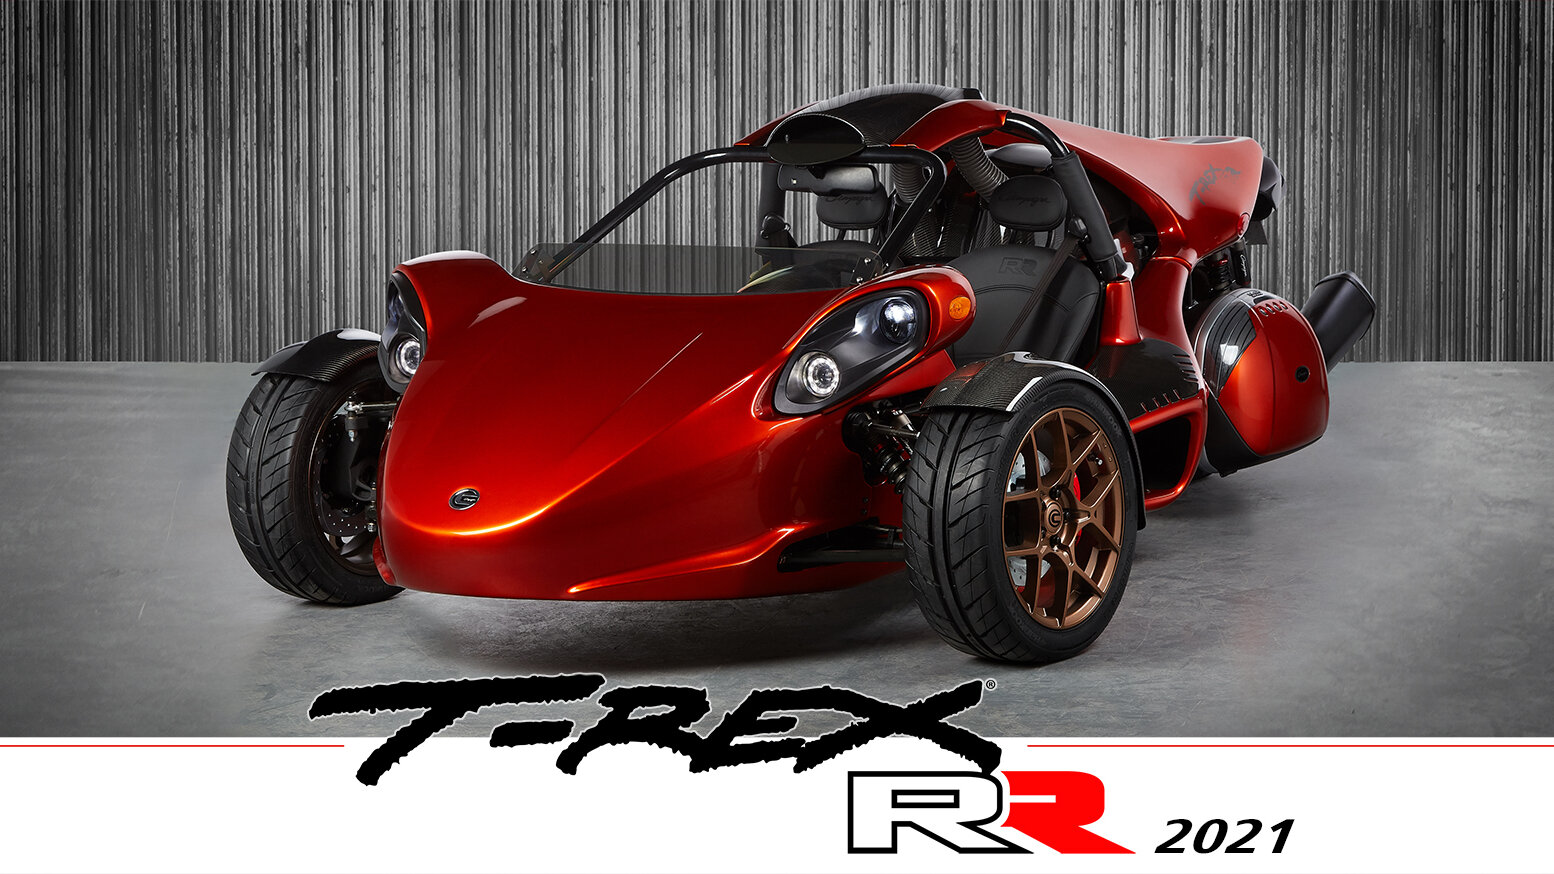 Moto del día: Campagna T-REX RR (2021)